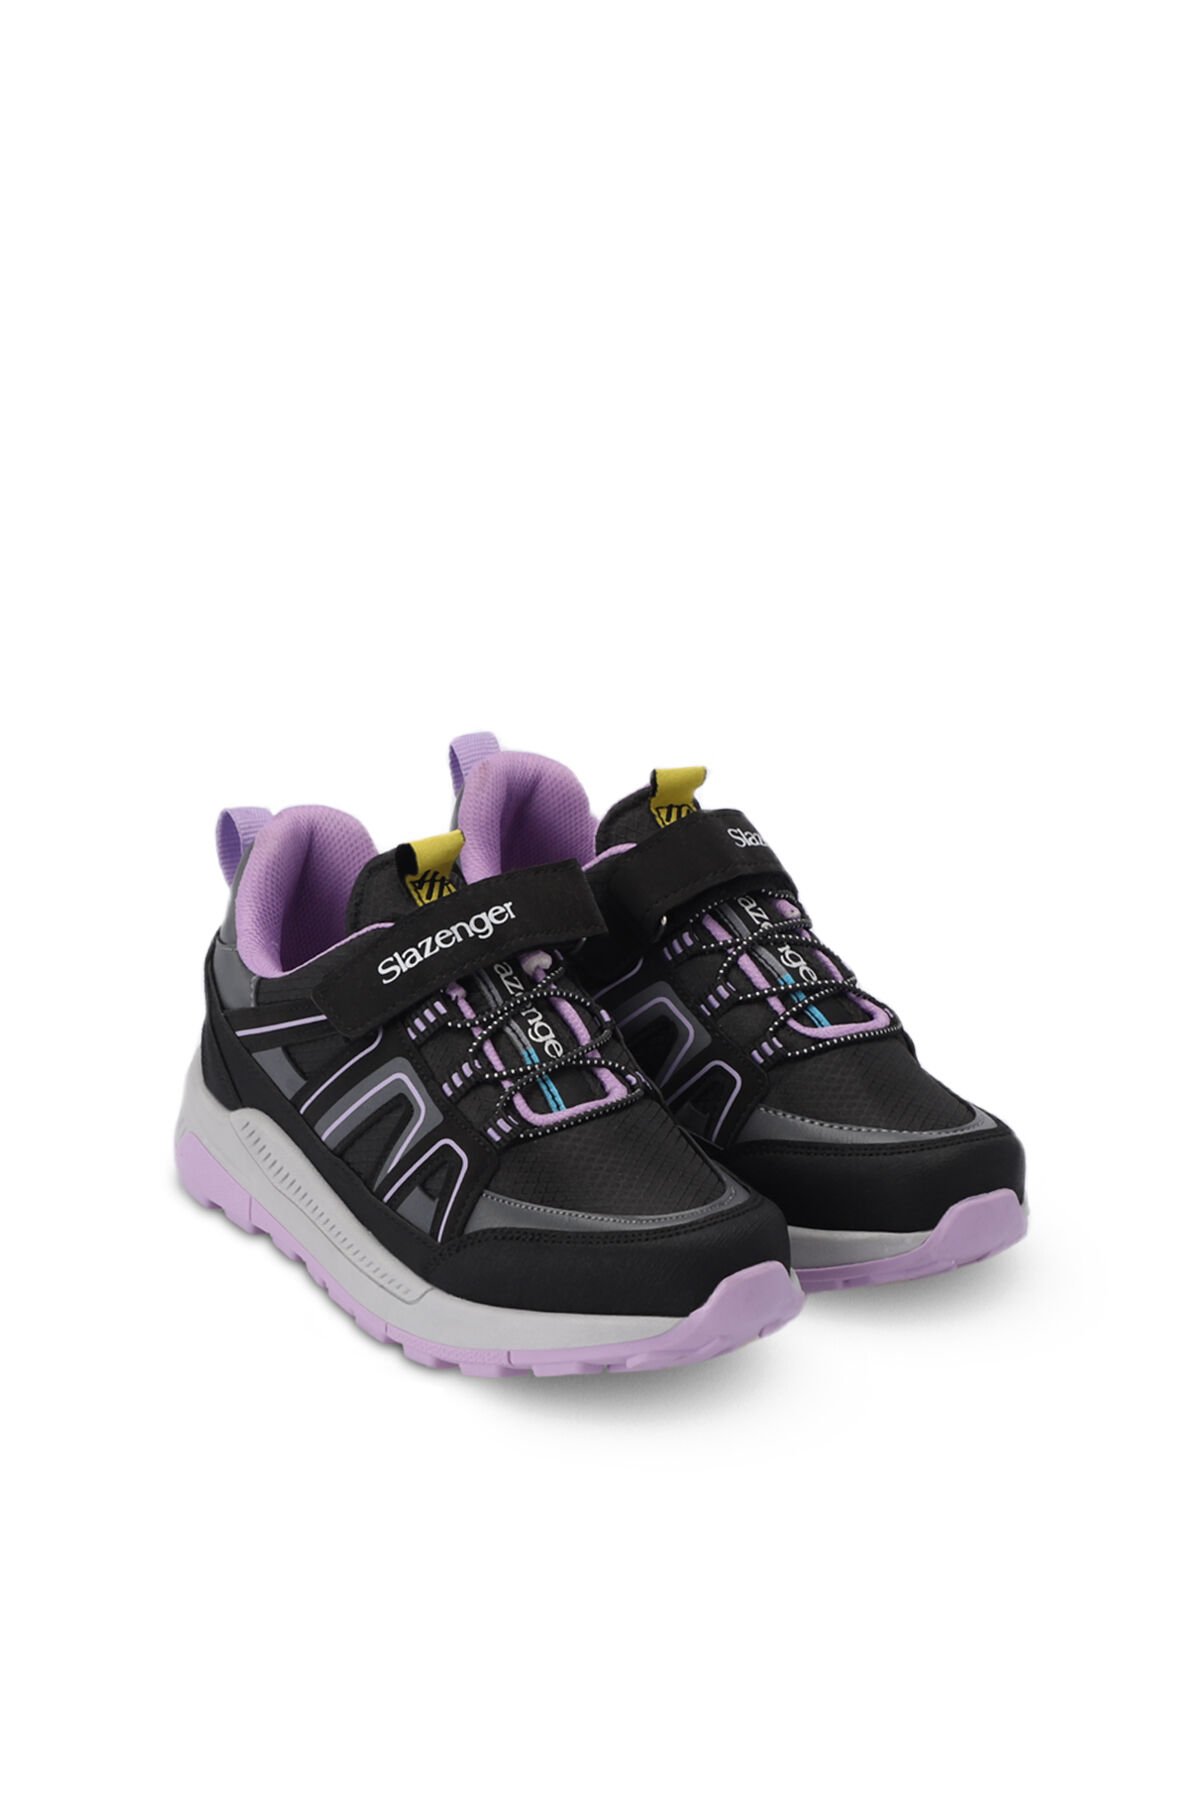 Slazenger KROSS KTN Sneaker Kız Çocuk Ayakkabı Siyah / Mor - Thumbnail